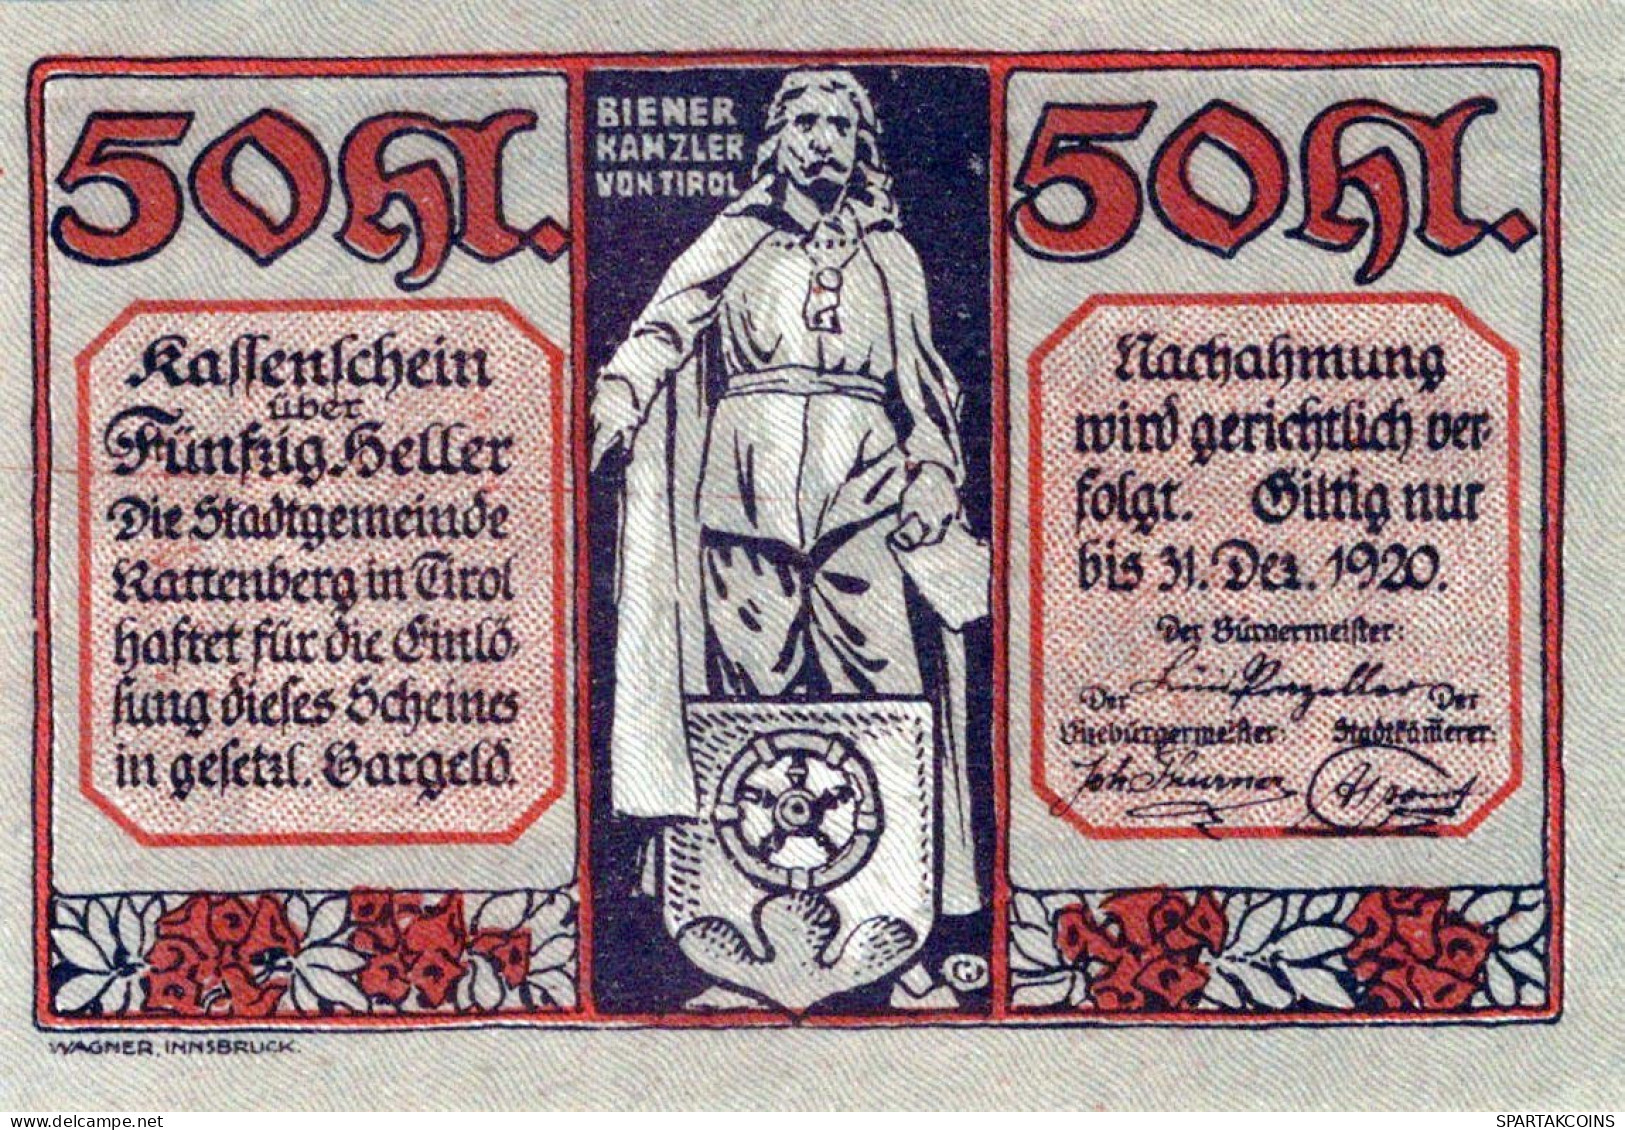 50 HELLER 1920 Stadt RATTENBERG Tyrol Österreich Notgeld Banknote #PE522 - [11] Emissions Locales